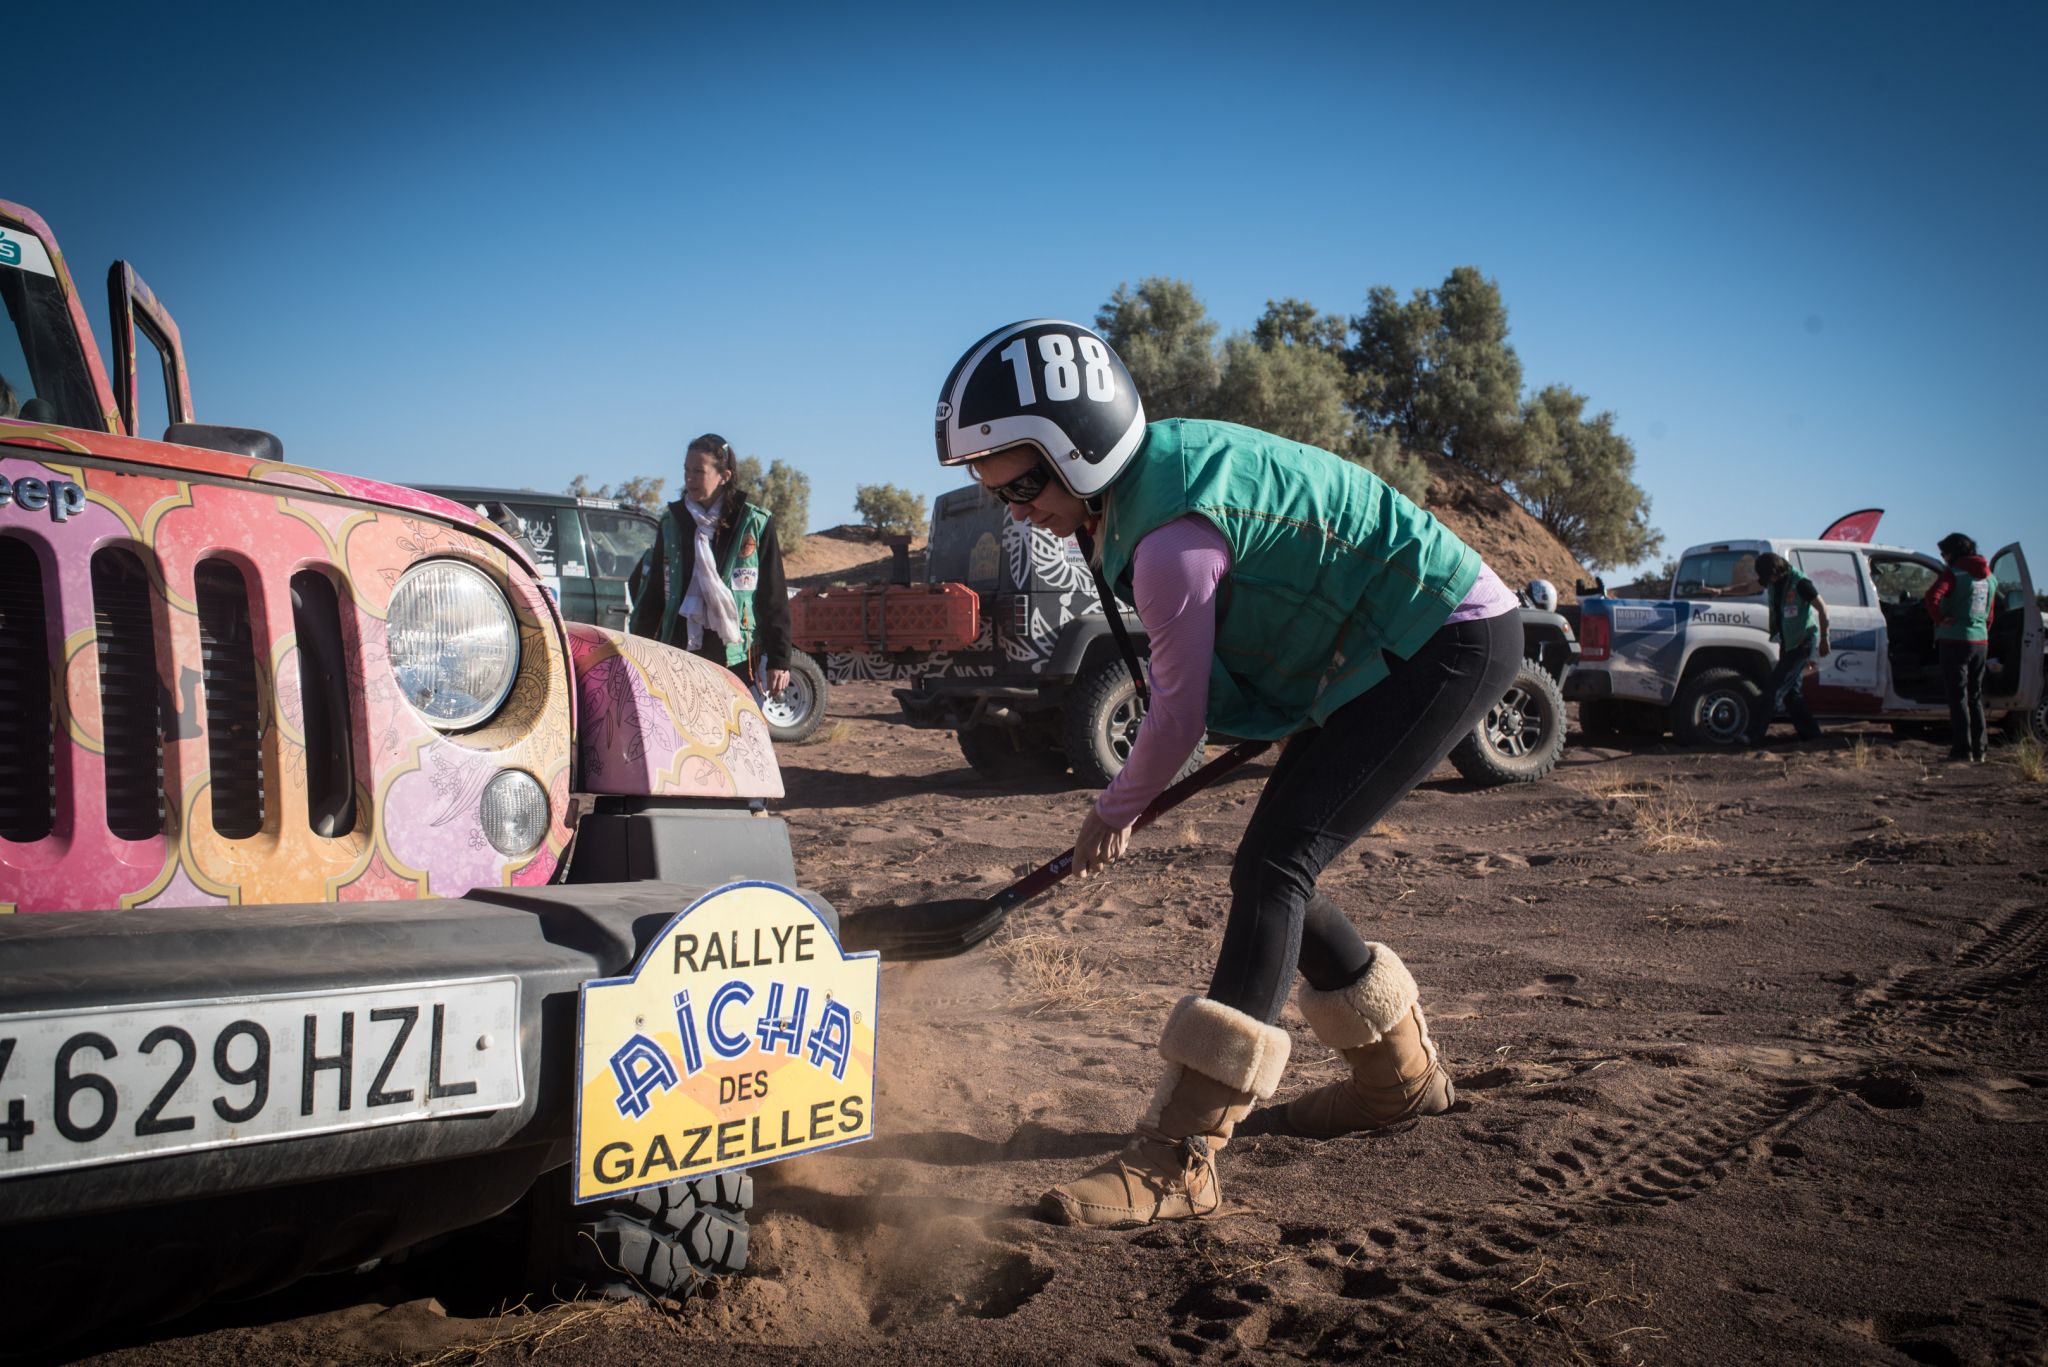 Rallye Aïcha des Gazelles 2016 - Day 6